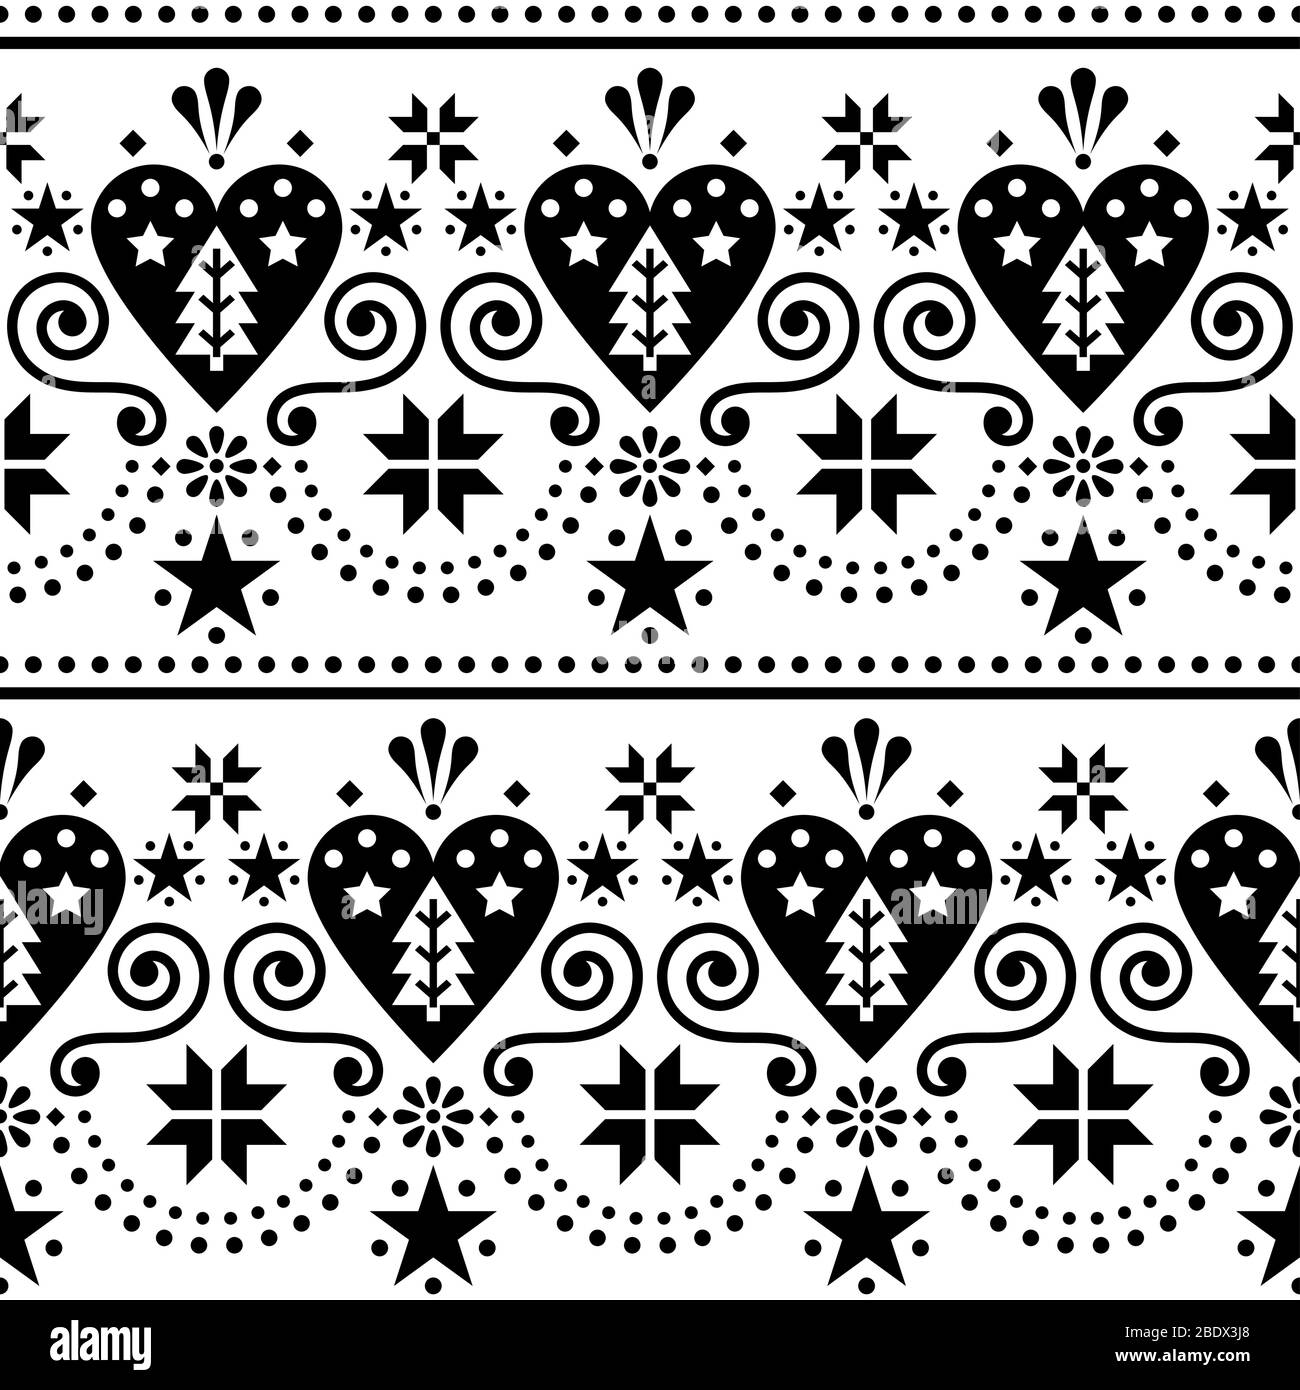 Skandinavische Weihnachten folk art nahtlose Vektor Muster - lange, horizontale repetitive Design mit Weihnachtsbäumen, Schneeflocken und Herzen Stock Vektor